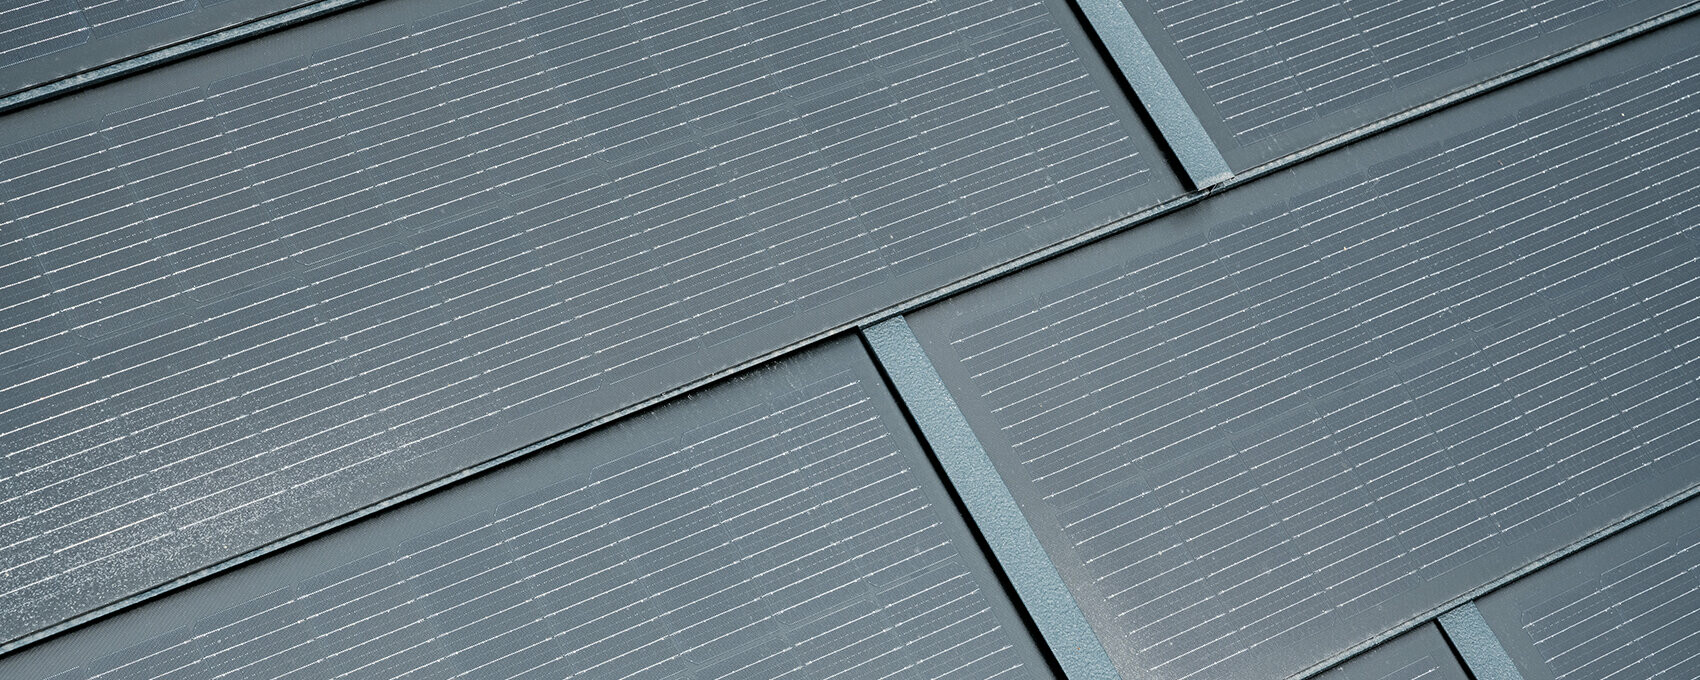 Dettaglio della tegola fotovoltaica piccola posata. La tegola fotovoltaica piccola nel colore P.10 antracite é stata combinata alla tegola R.16.